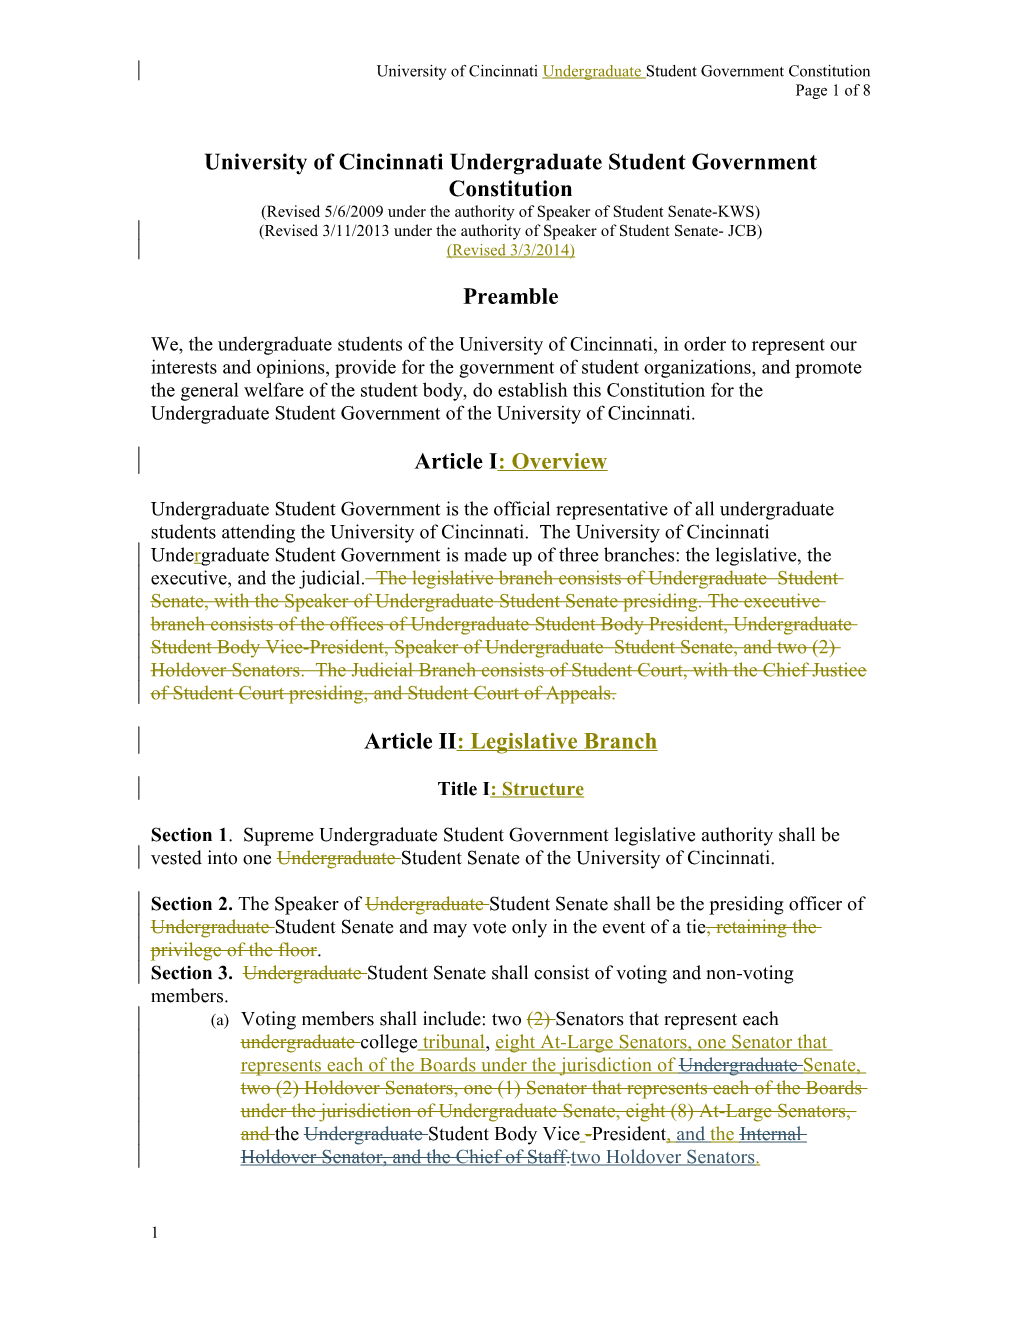 University of Cincinnati Student Government Constitution